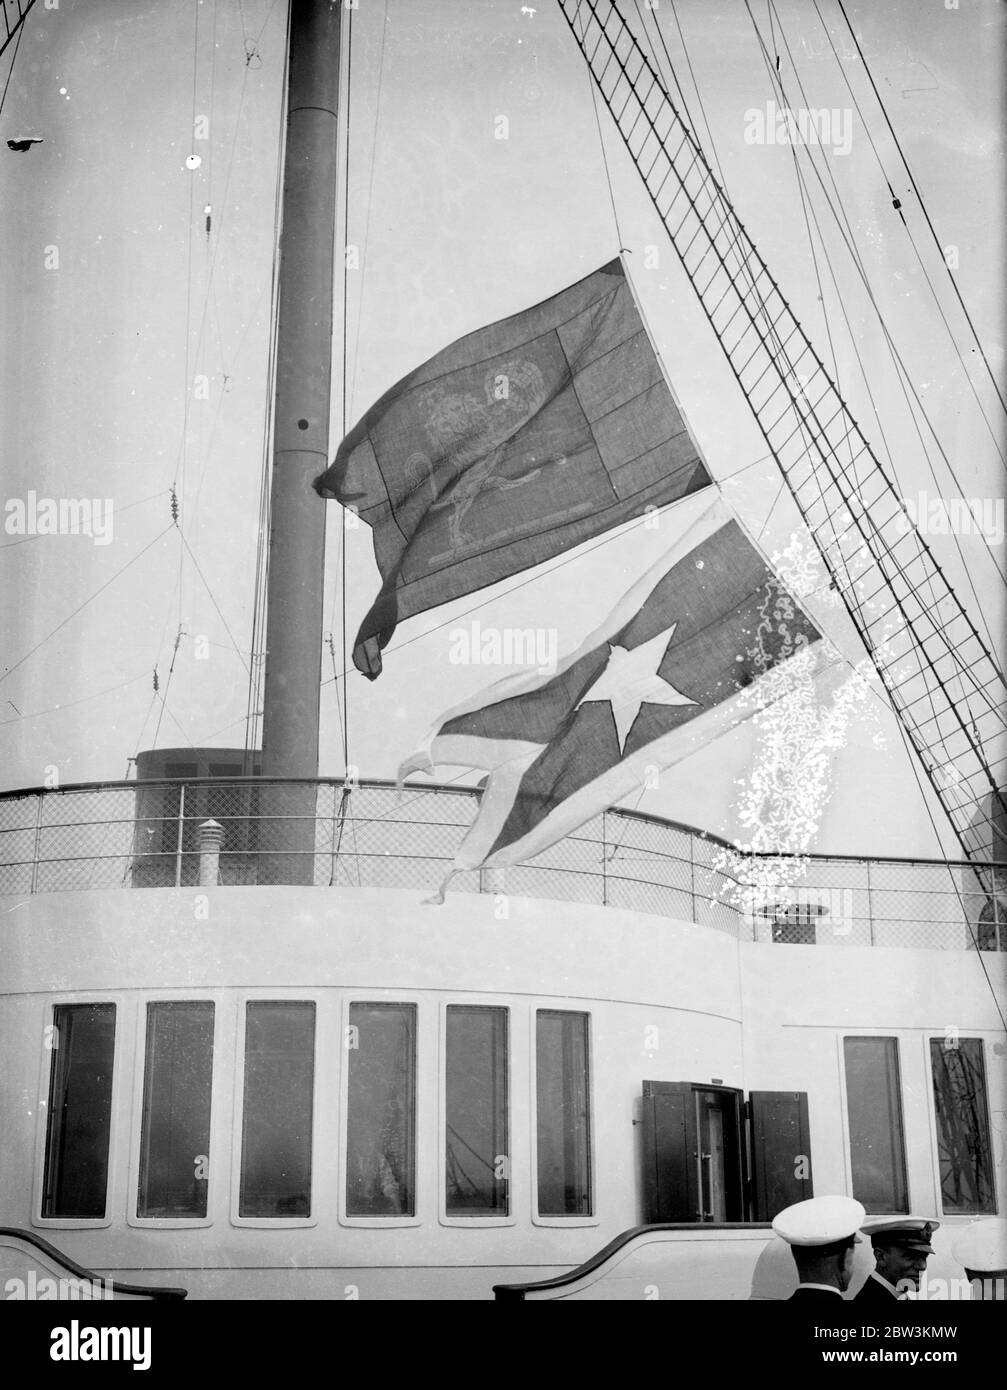 La regina Mary , consegnata a Cunard White Star a Southampton , vola le sue nuove bandiere . La Regina Mary RMS è ora ufficialmente una Cunard White Star Liner . Le bandiere di John Brown e della Compagnia dei costruttori navali , sono state abbassate a bordo della nave gigante di Southampton e la bandiera della Cunard White Star è stata issata al loro posto. Foto , che issava le bandiere Cunard White Star e abbassava la bandiera John Browns come la ' Queen Mary' fu consegnata a Southampton . 12 maggio 1936 Foto Stock